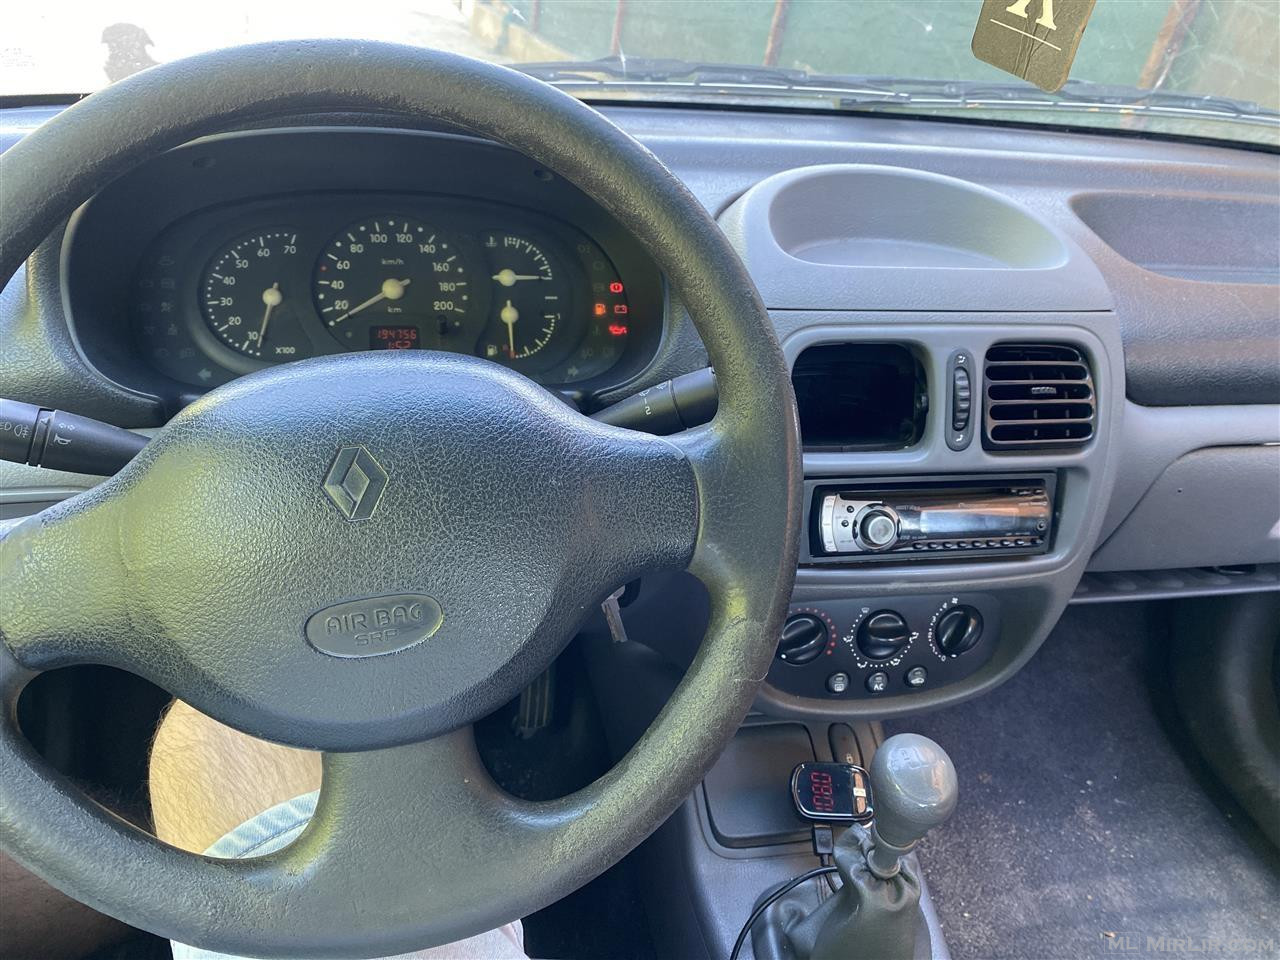 Renault Clio 1.2 